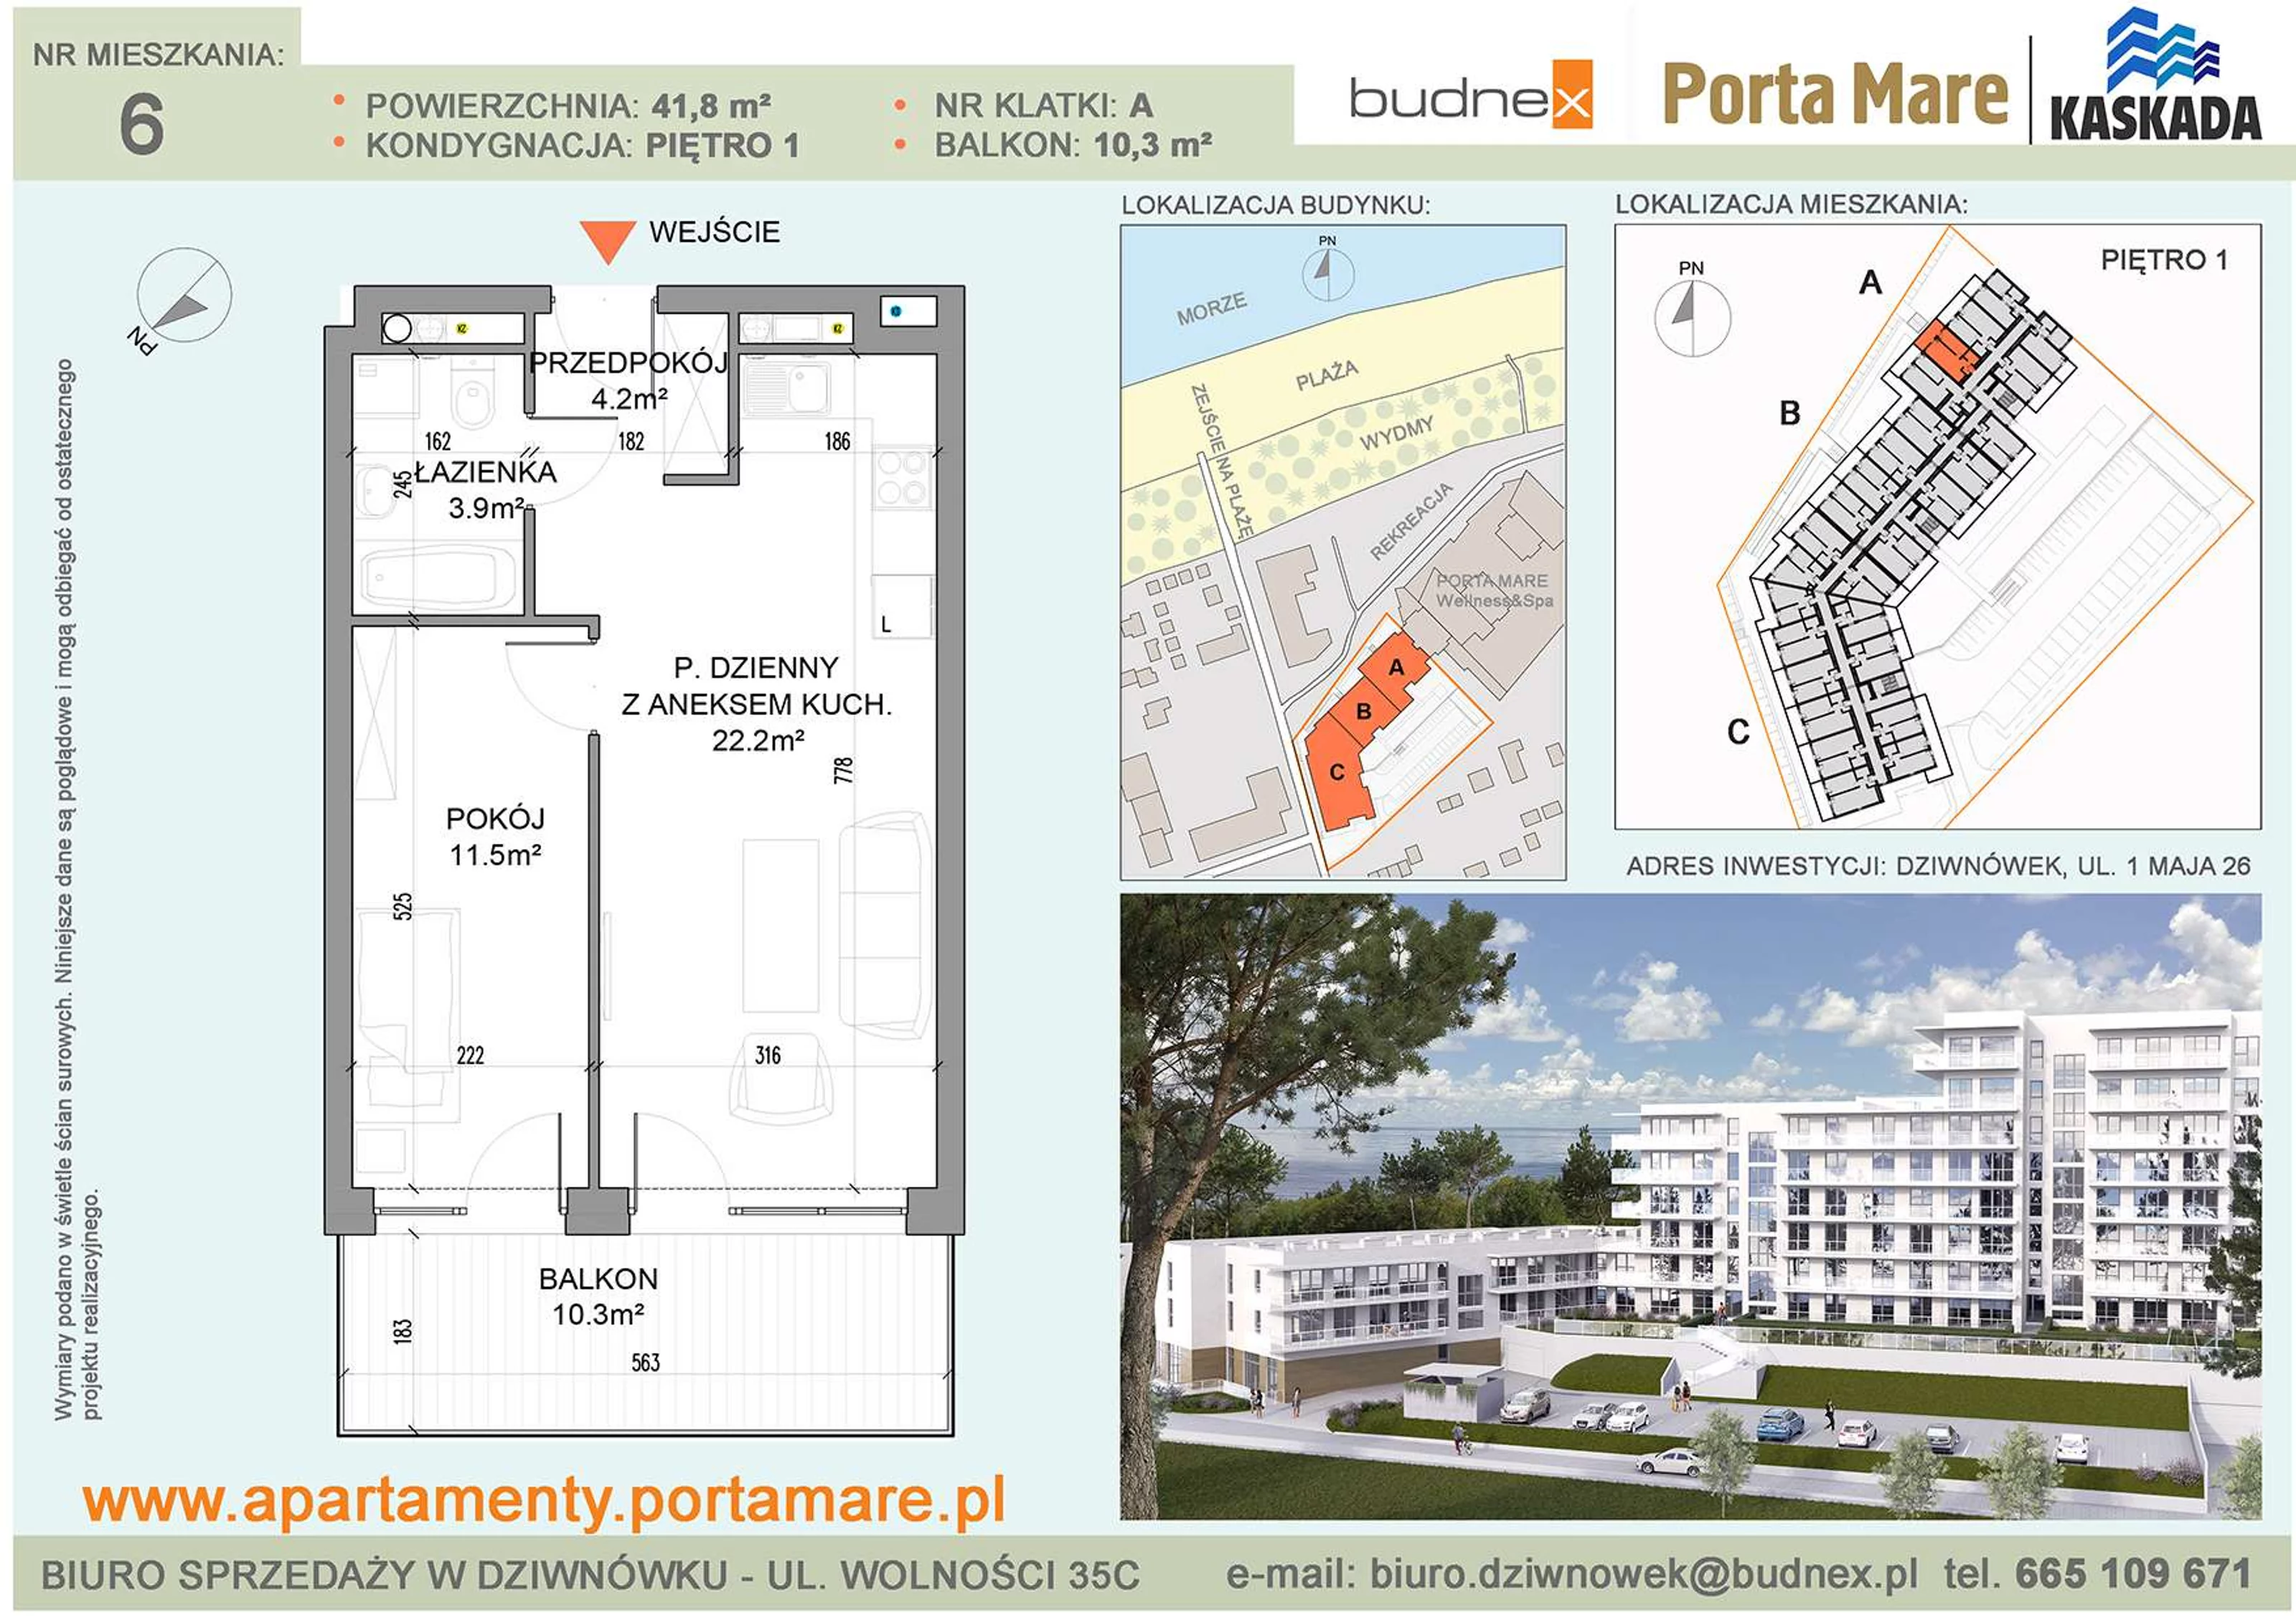 Mieszkanie 41,80 m², piętro 1, oferta nr A/M06, Porta Mare Kaskada, Dziwnówek, ul. 1 Maja 26